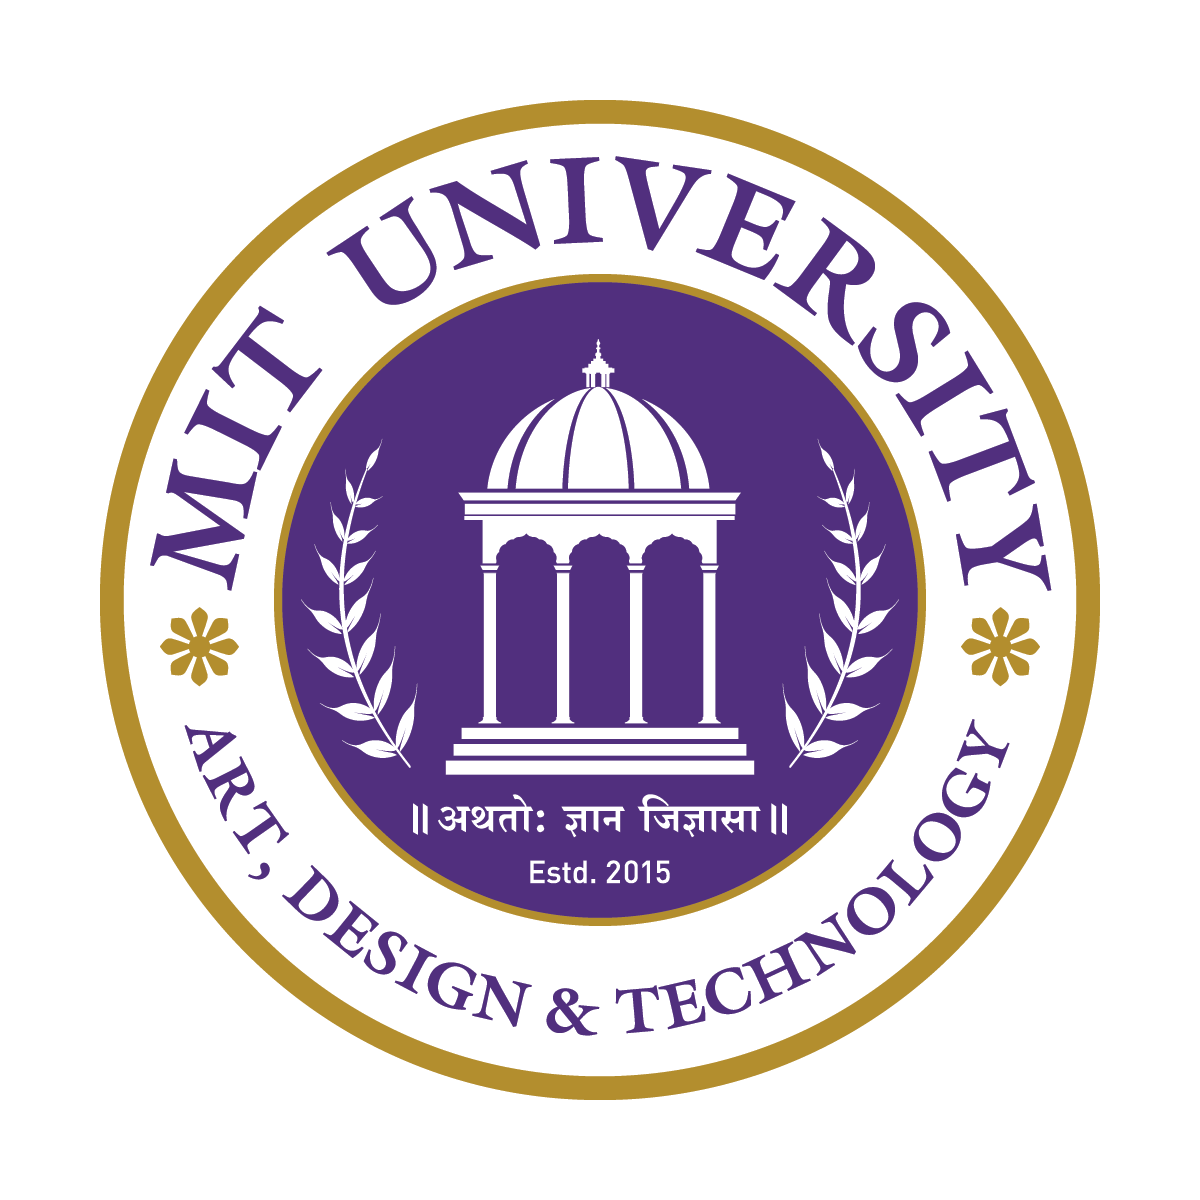 MIT ADT University